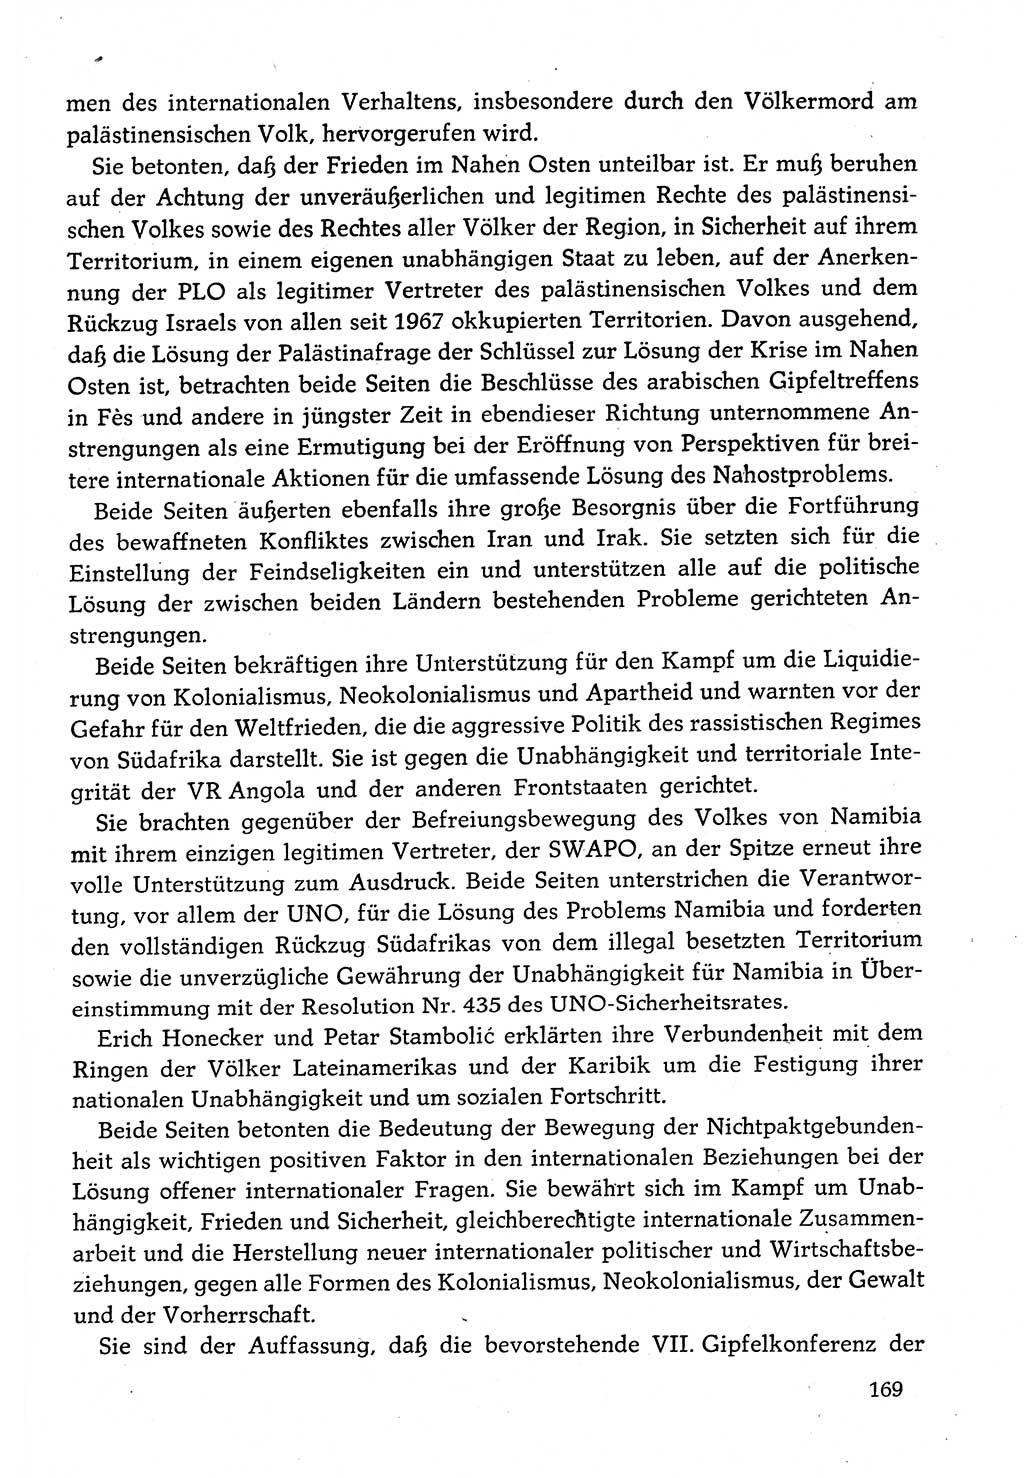 Dokumente der Sozialistischen Einheitspartei Deutschlands (SED) [Deutsche Demokratische Republik (DDR)] 1982-1983, Seite 169 (Dok. SED DDR 1982-1983, S. 169)